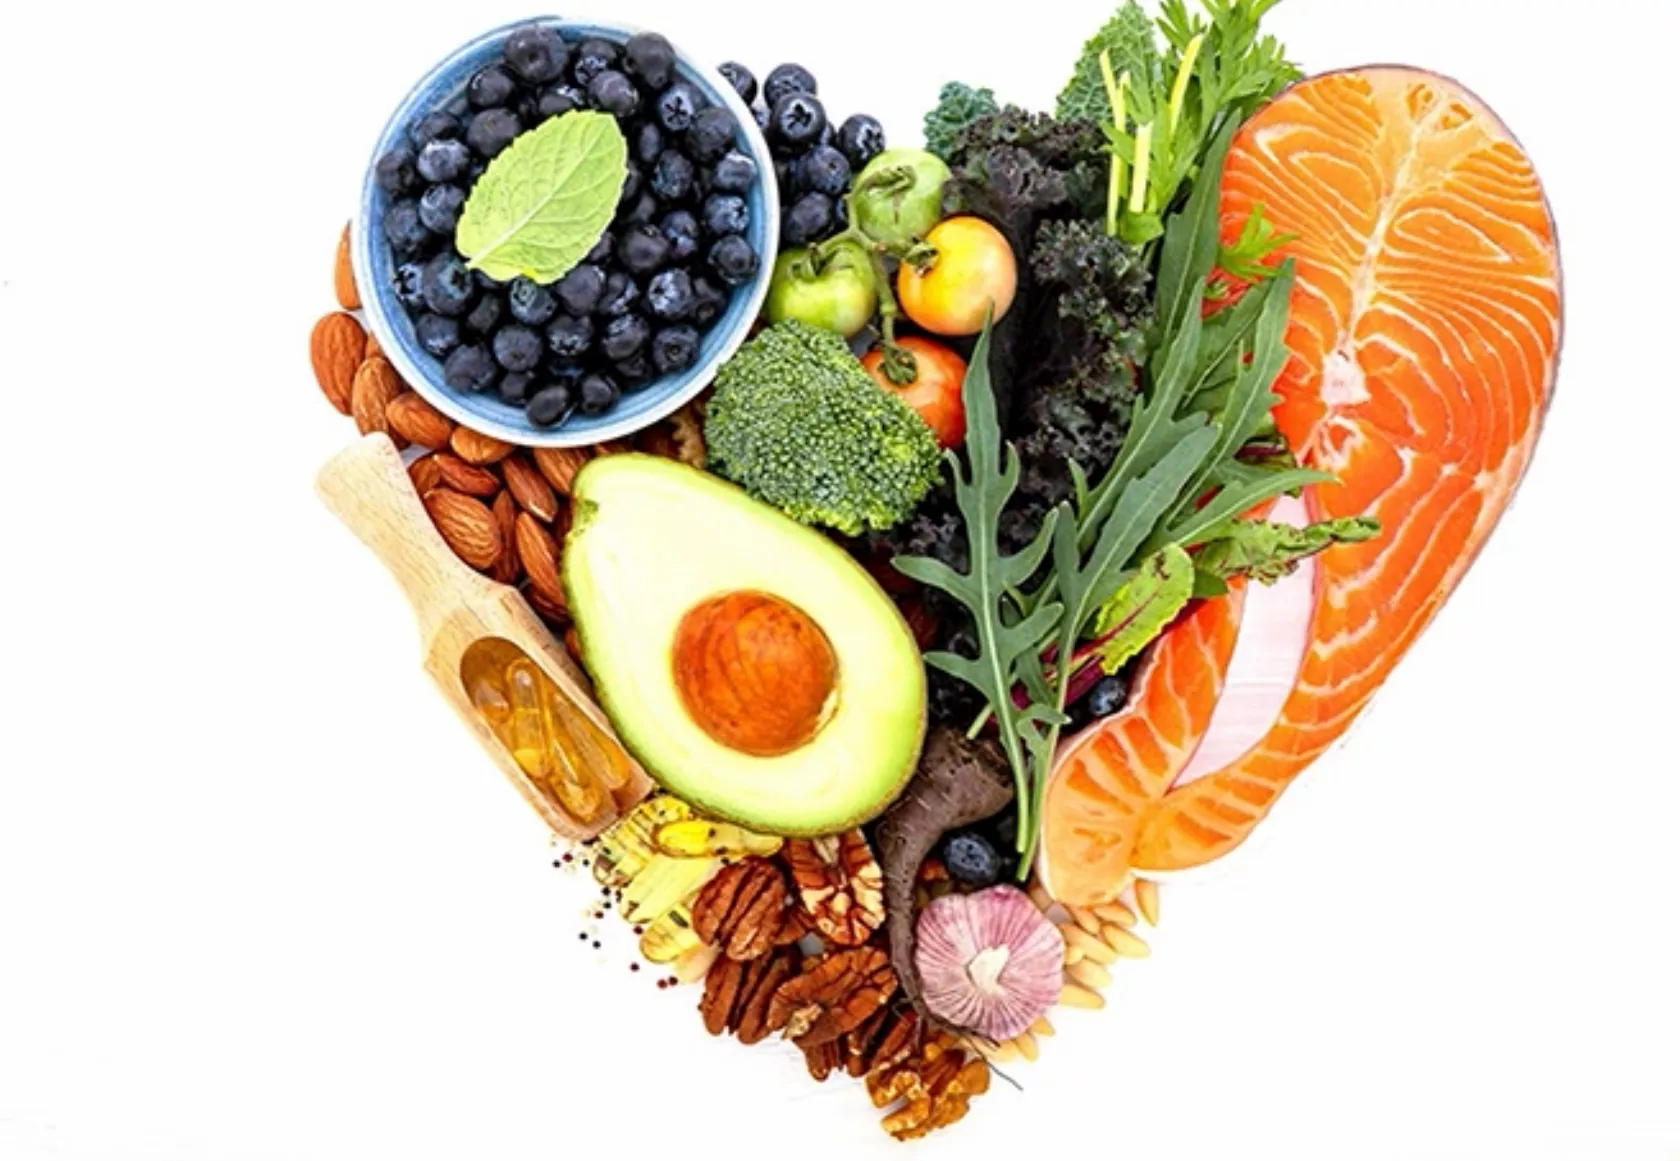 Obst und Gemüse in Herzform angeordnet.